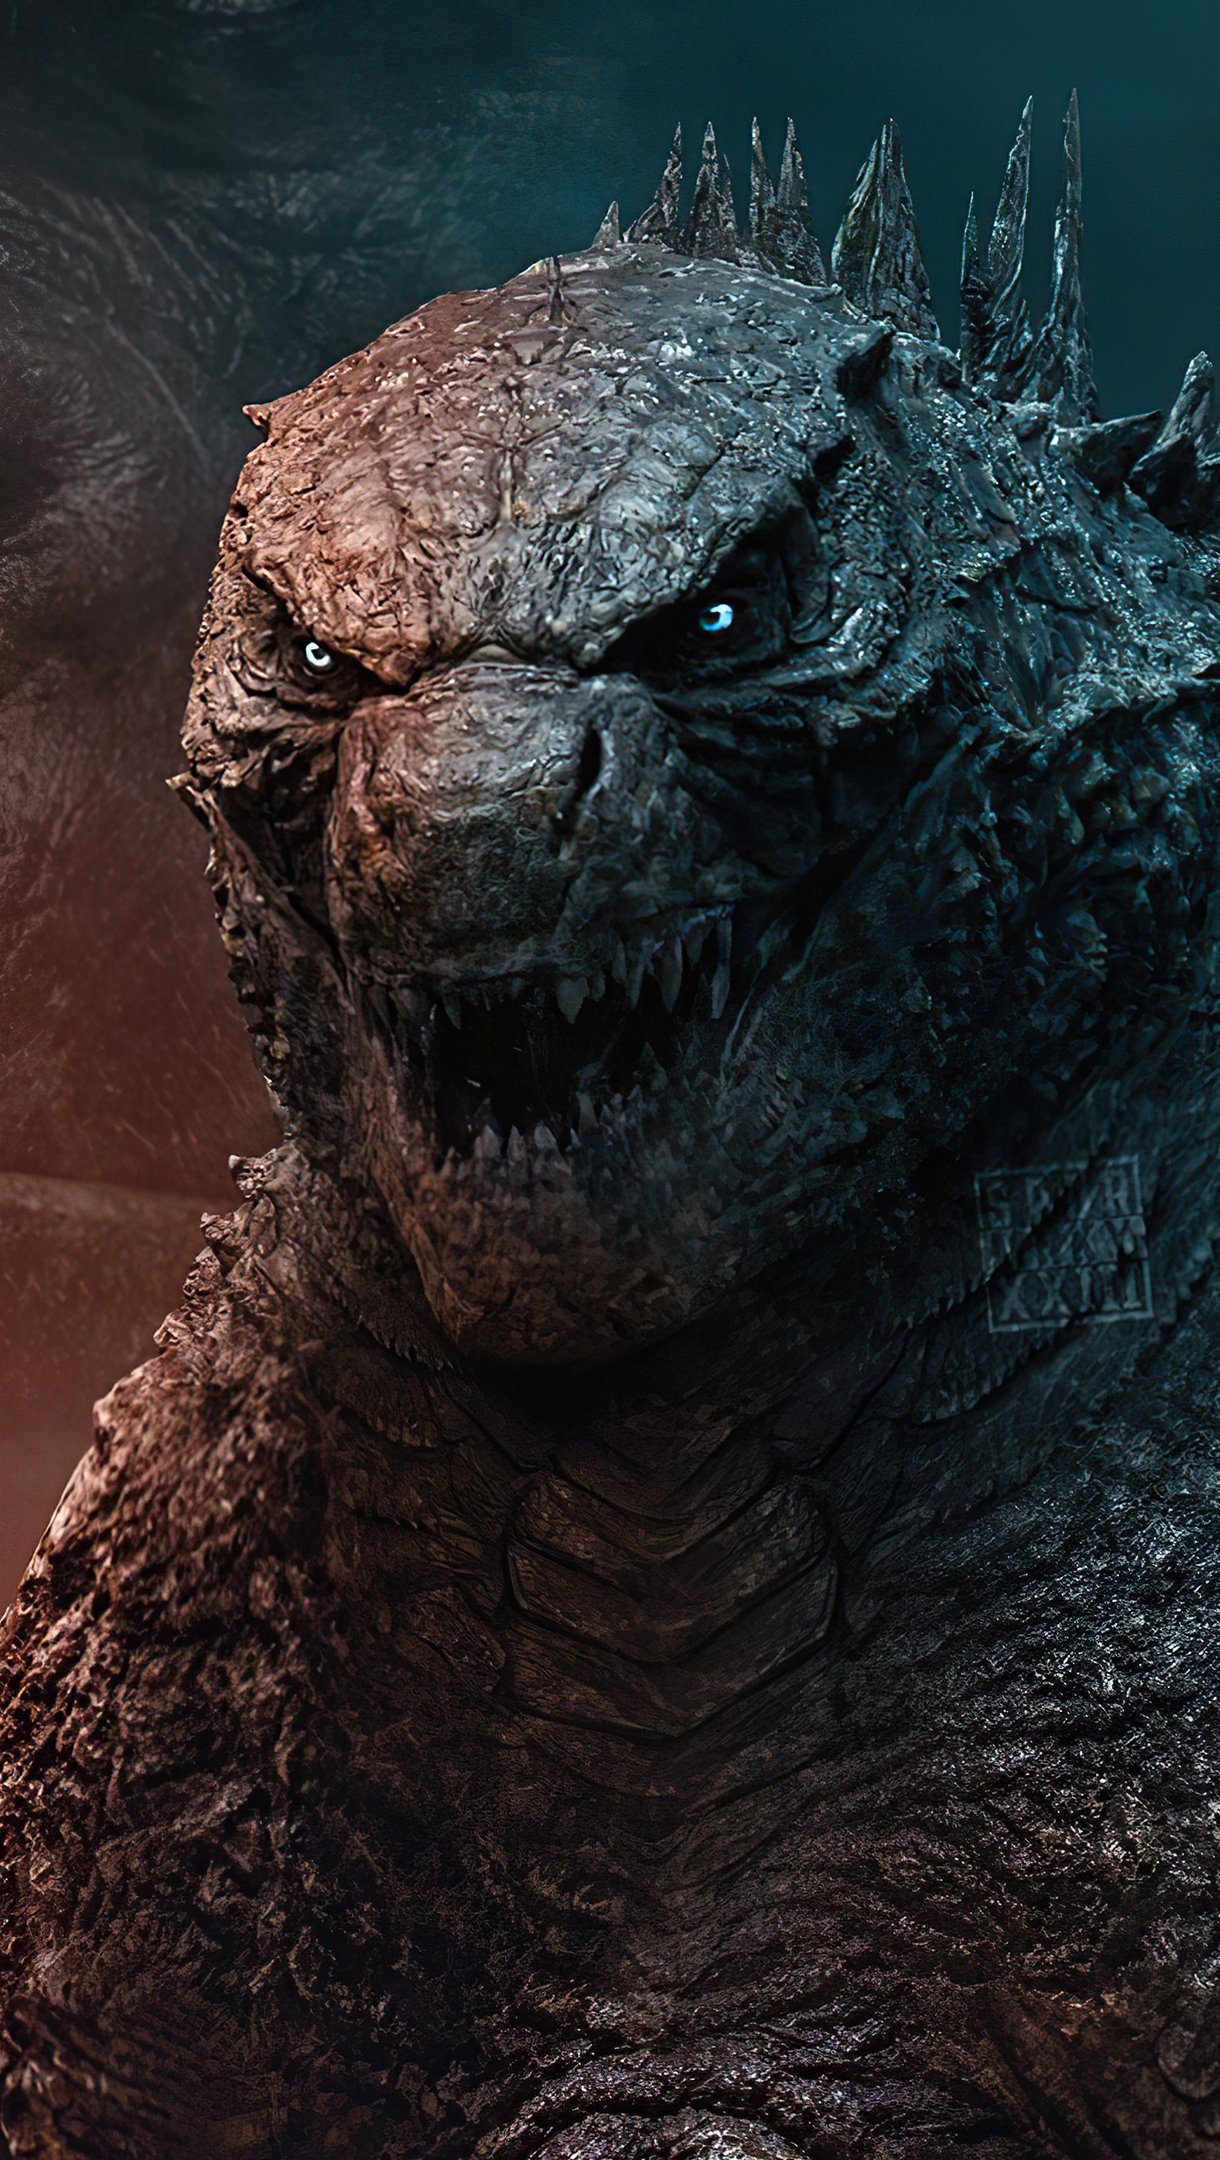 Godzilla vs King Kong 2021 Wallpaper 4k Ultra HD ID:7224